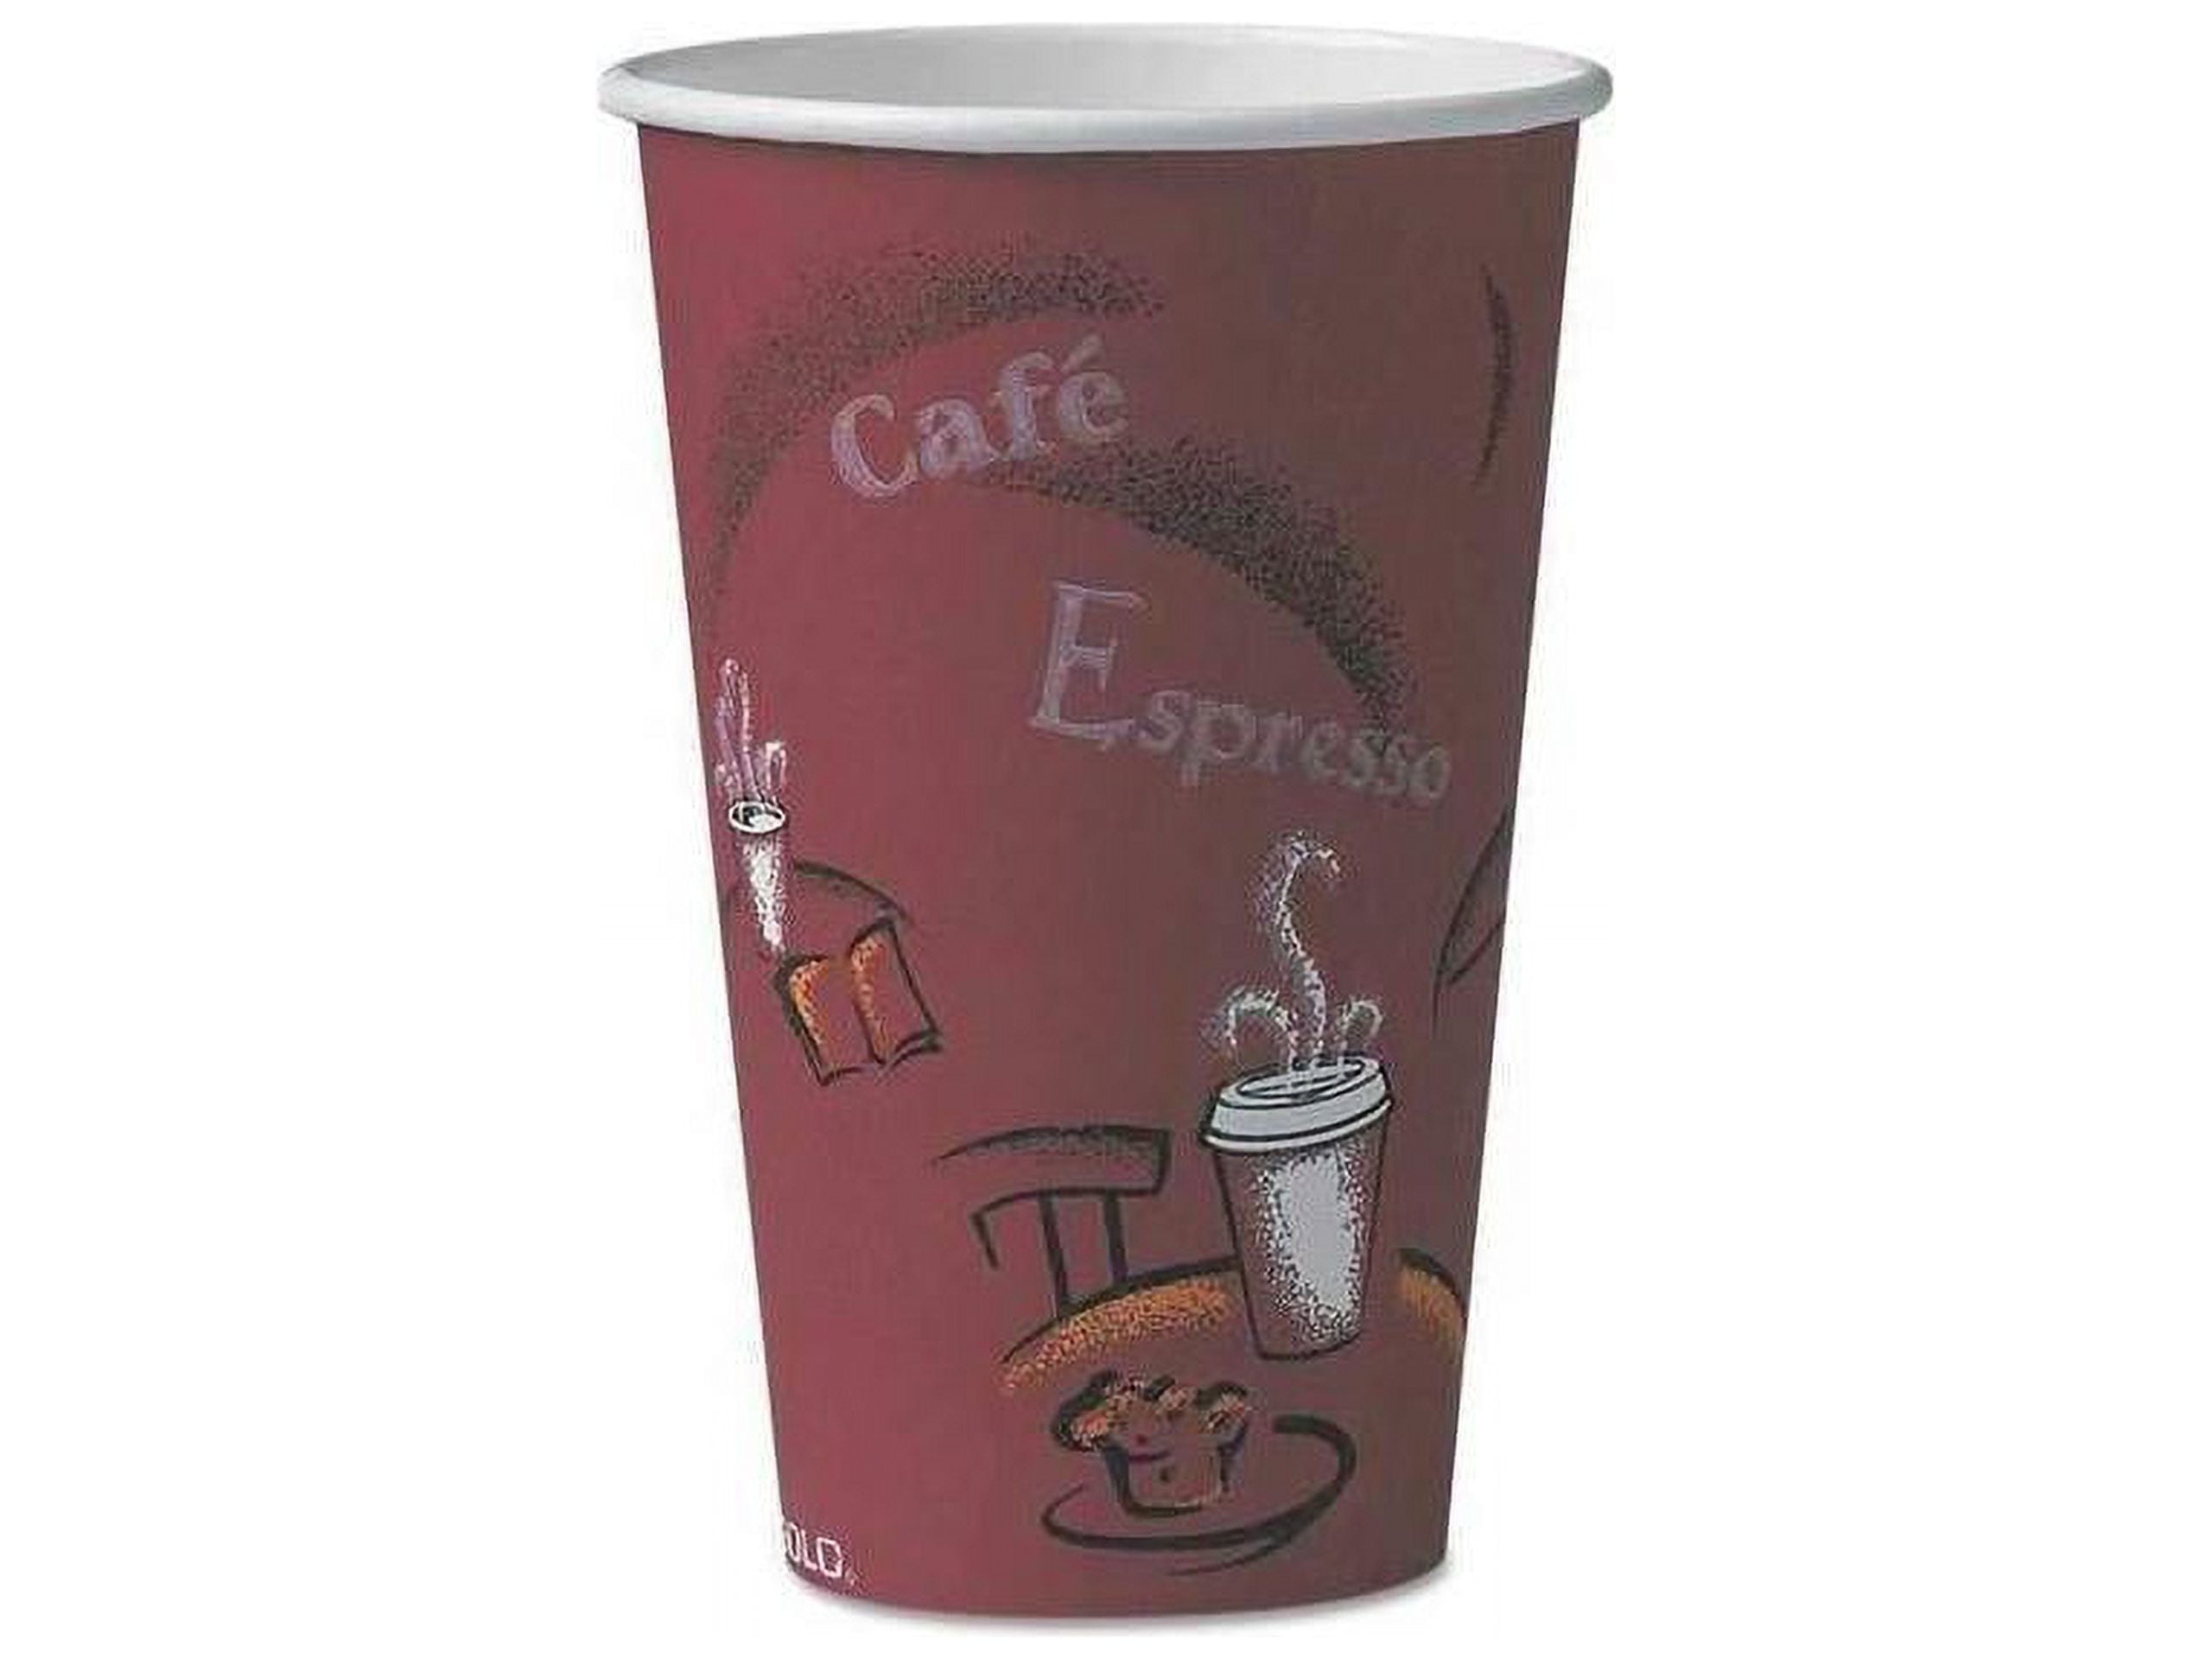 Cia&Co Pack Vasos Desechables Nespresso para Café Lungo/Largo/con